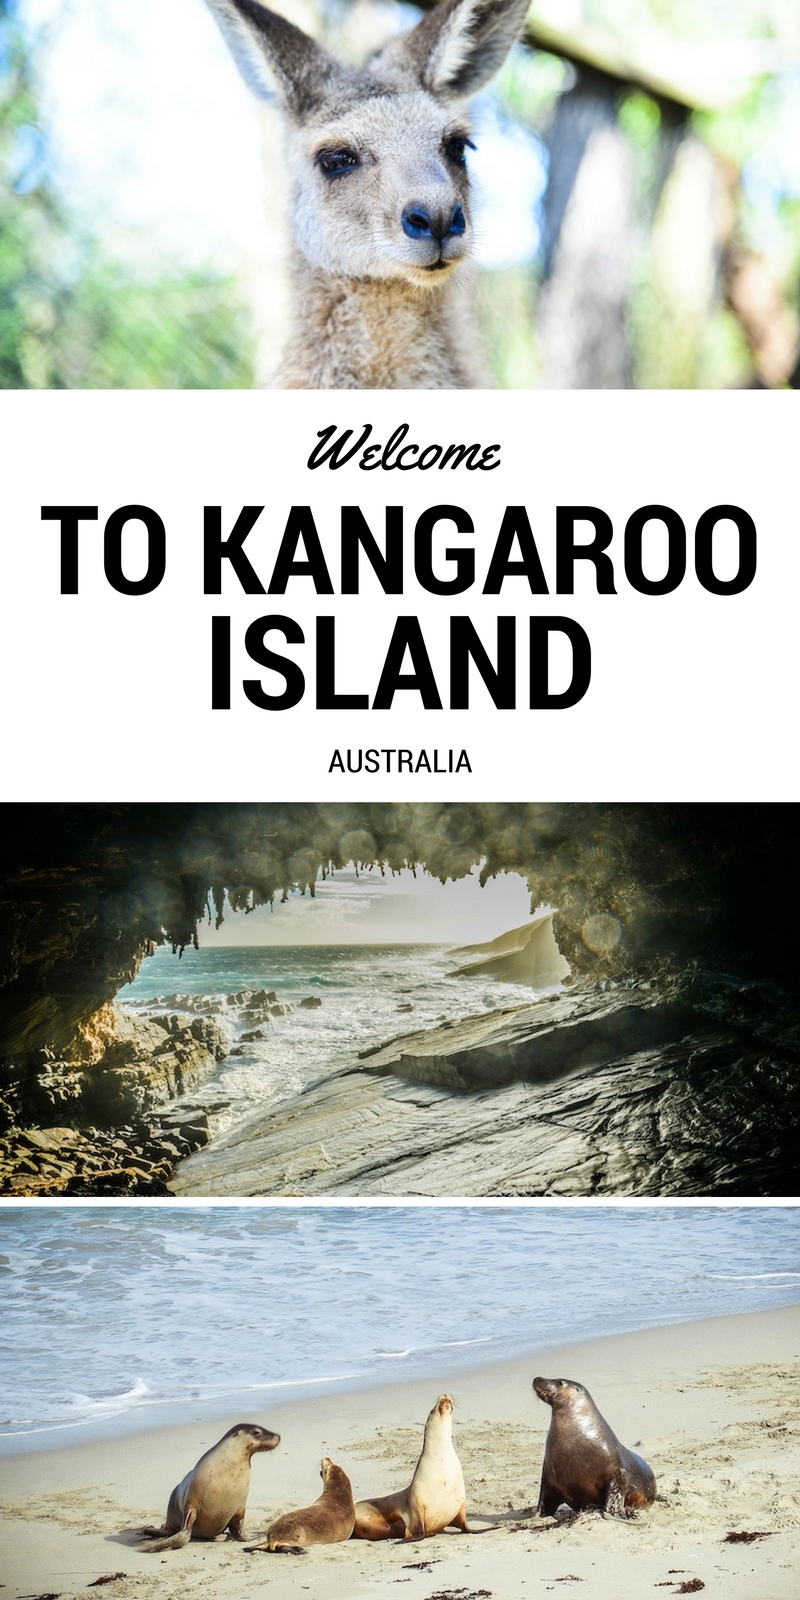 Welcome to Kangaroo Island, Australia